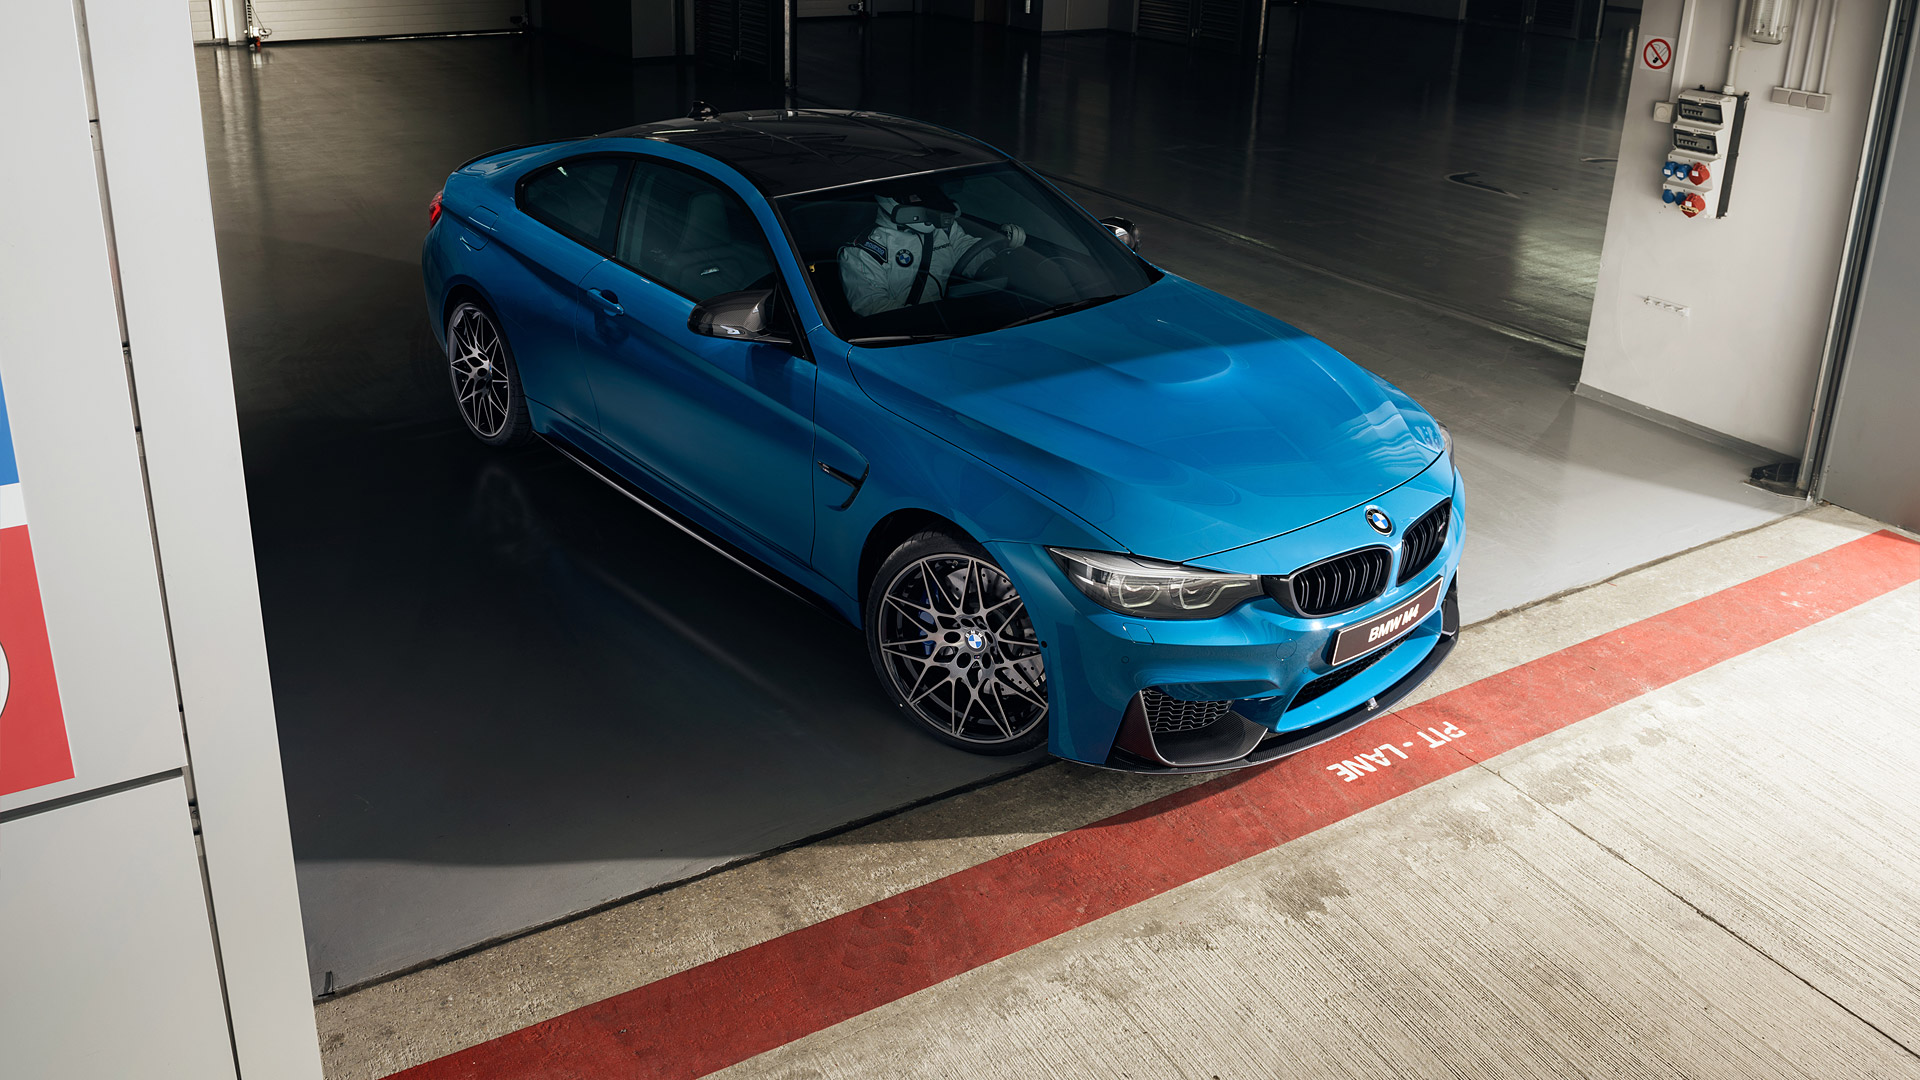  2018 BMW M4 Wallpaper.